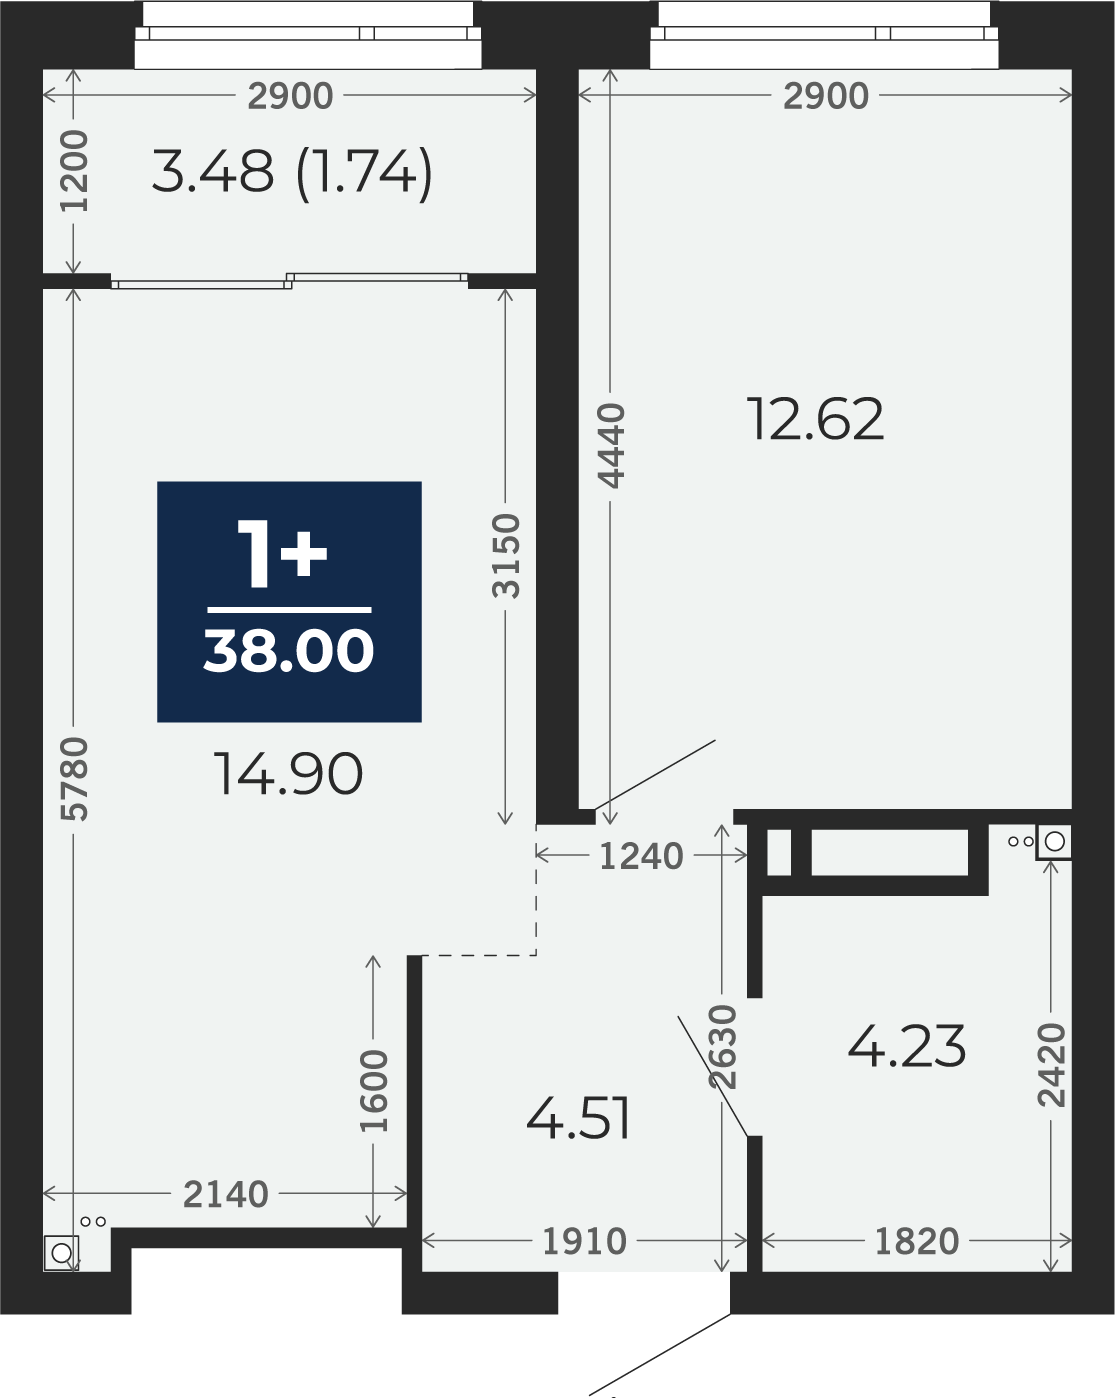 Квартира № 141, 1-комнатная, 38 кв. м, 4 этаж